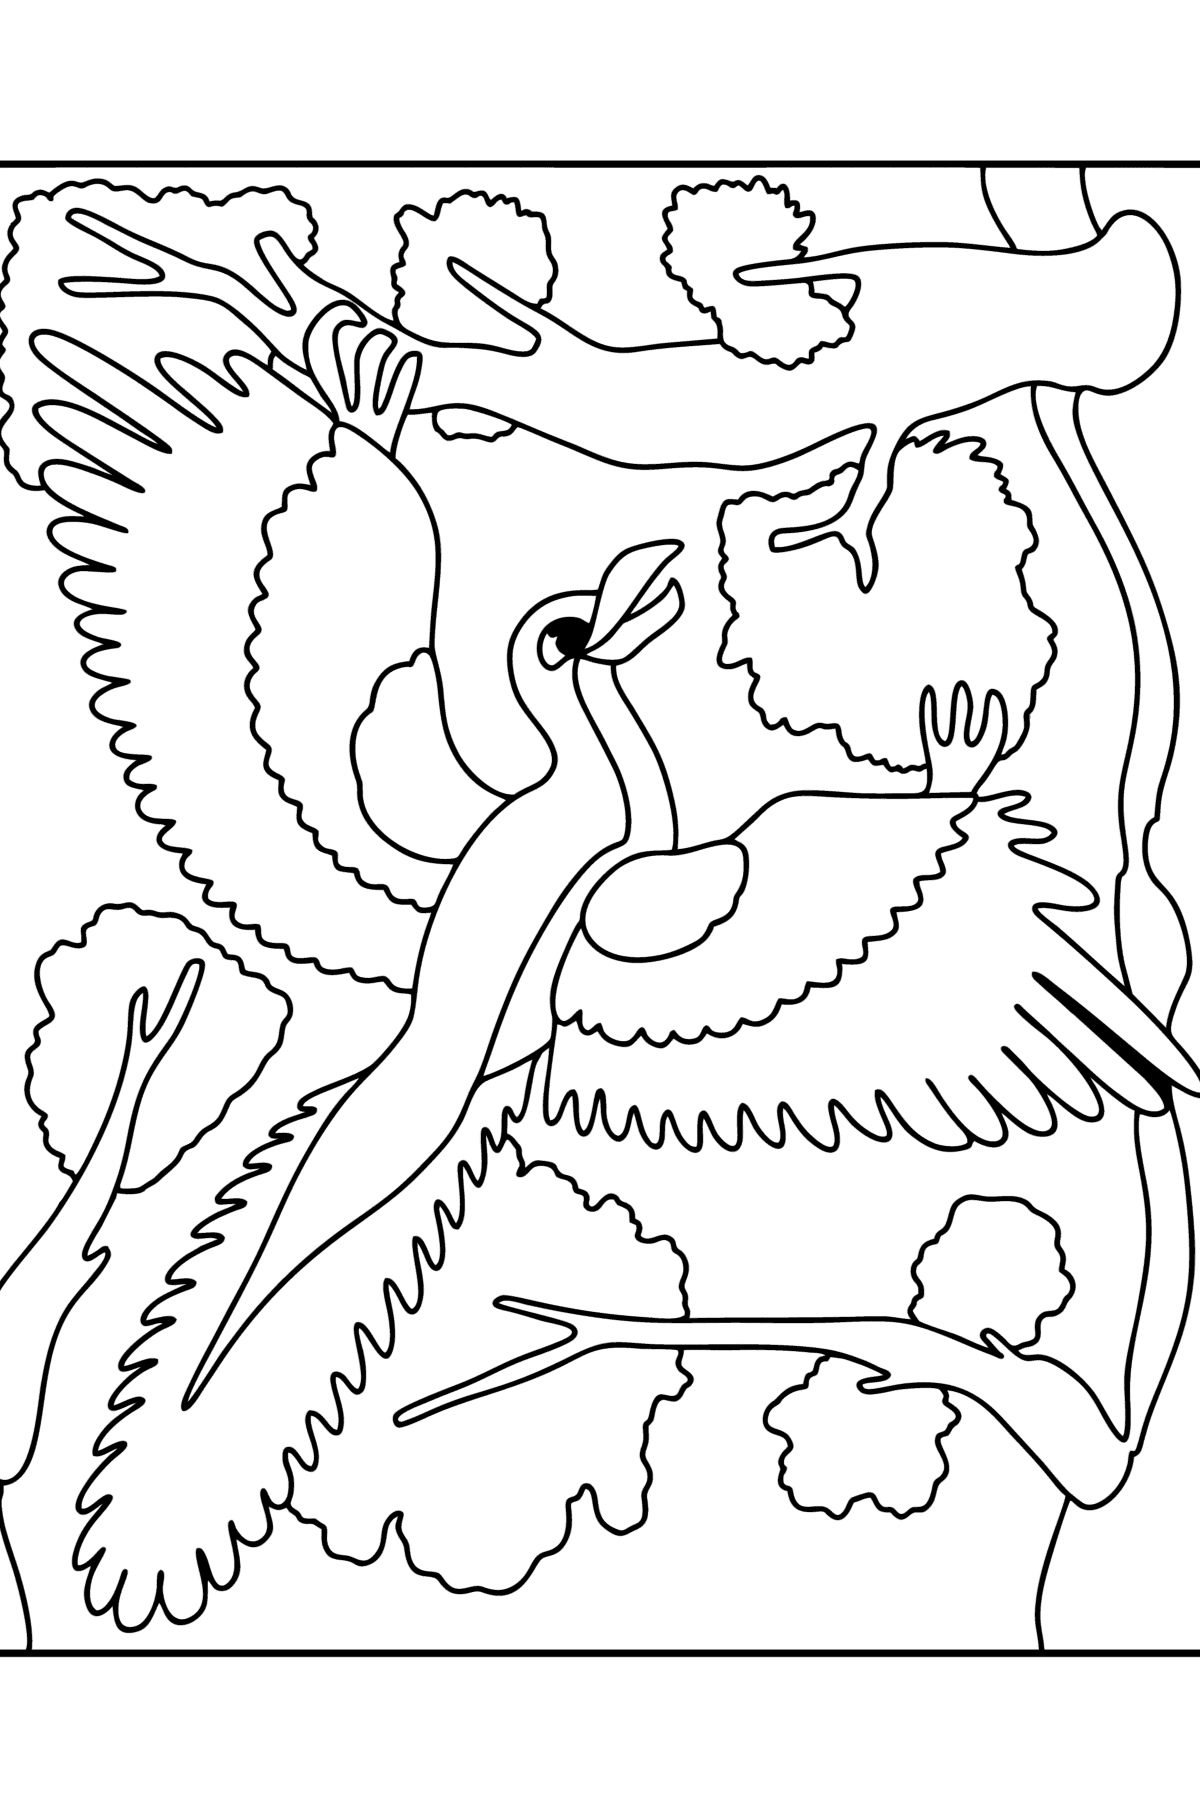 Kleurplaat archaeopteryx - kleurplaten voor kinderen